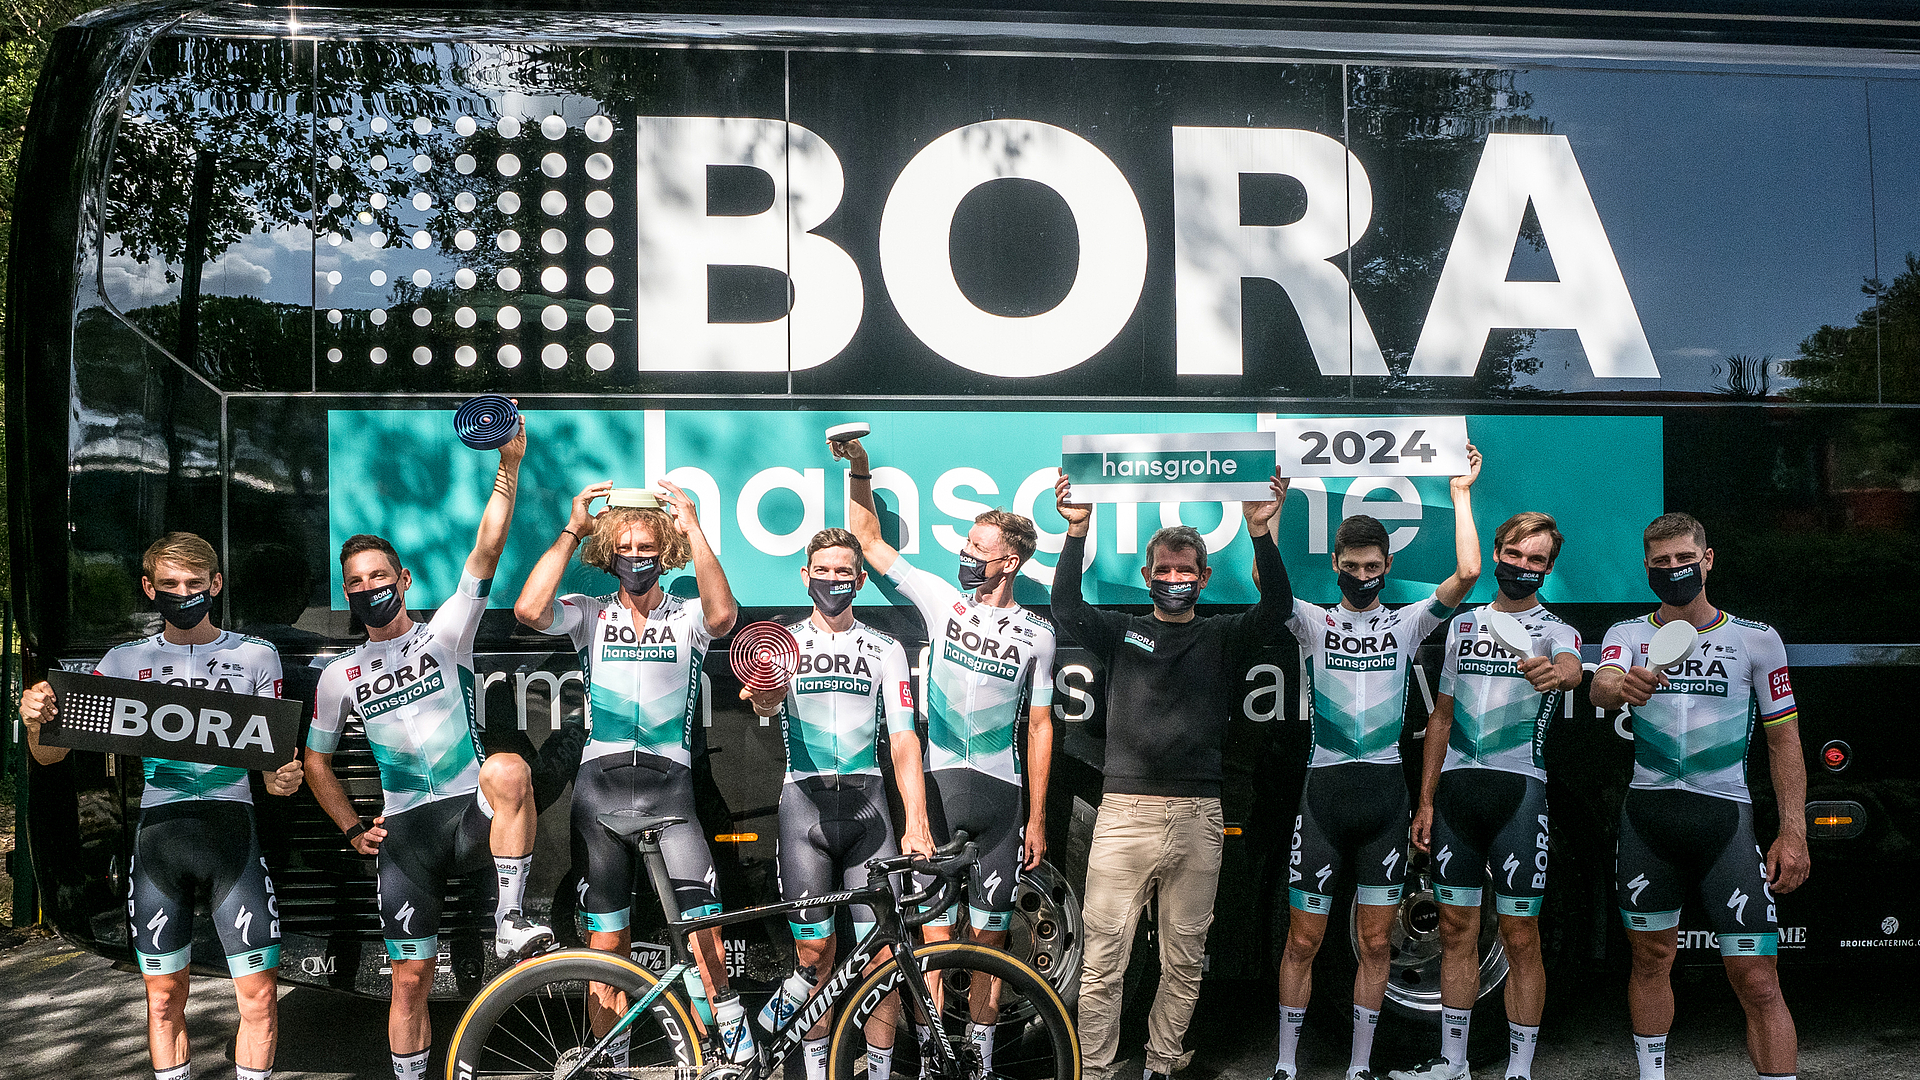 BORA renueva el patrocinio principal del equipo ciclista BORA – hansgrohe hasta 2024